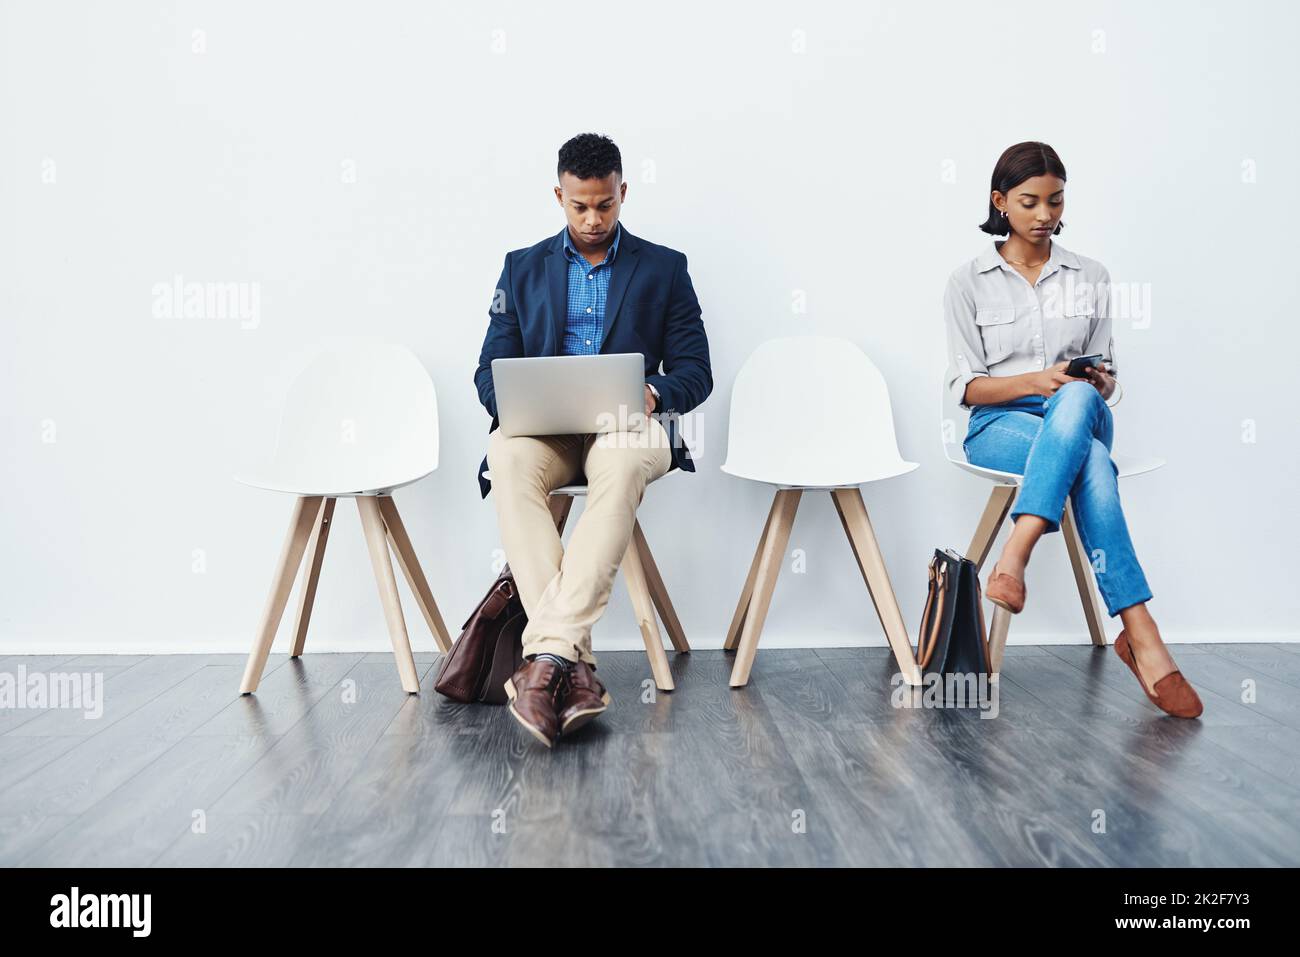 Fare rapidamente i preparativi finali prima della grande presentazione. Immagine a tutta lunghezza di due giovani uomini d'affari seduti sulle sedie e utilizzando i loro dispositivi tecnologici su uno sfondo grigio. Foto Stock